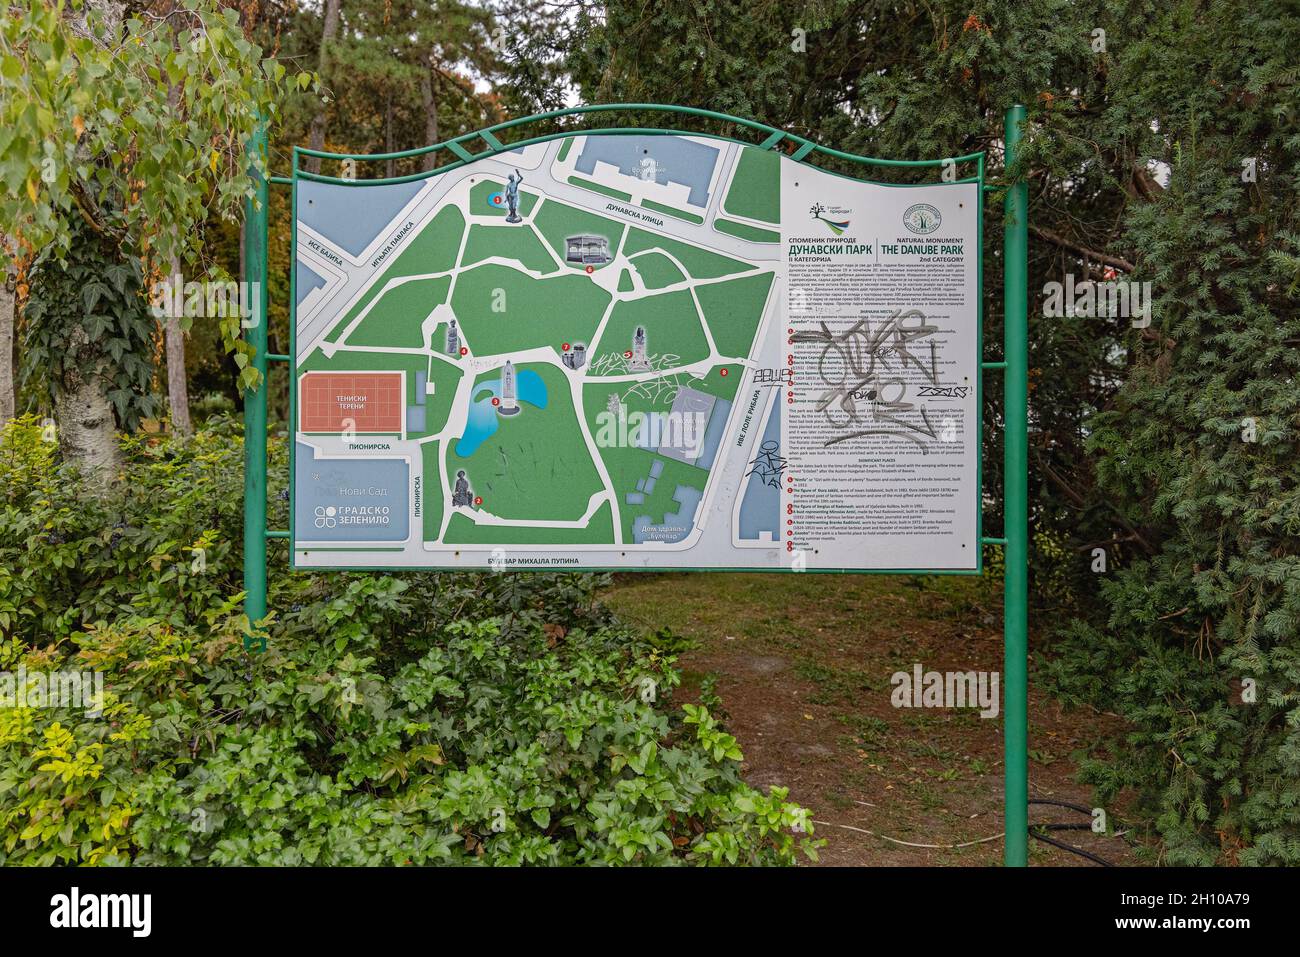 Novi Sad, Serbia - September 21, 2021: Map of Danube Park Natural Monument in Novi Sad. Stock Photo